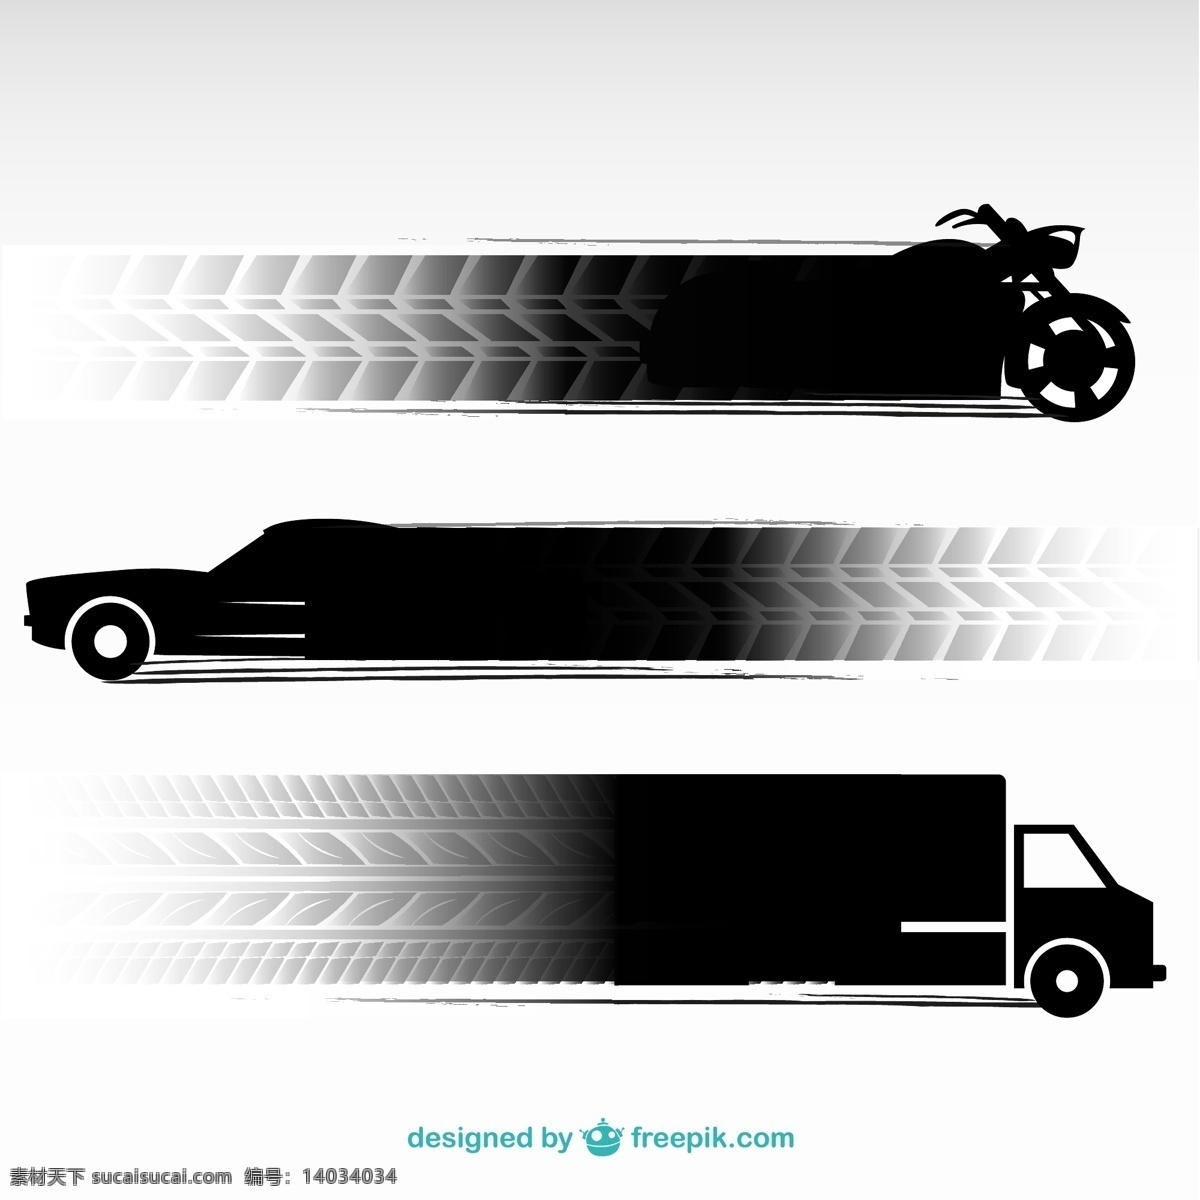 轮胎 轨道 交通车辆 标识 年份 海报 汽车 旅游 图标 复古 人 模板 道路 老式标志 艺术 标志 摩托车 壁纸 图形 布局 白色